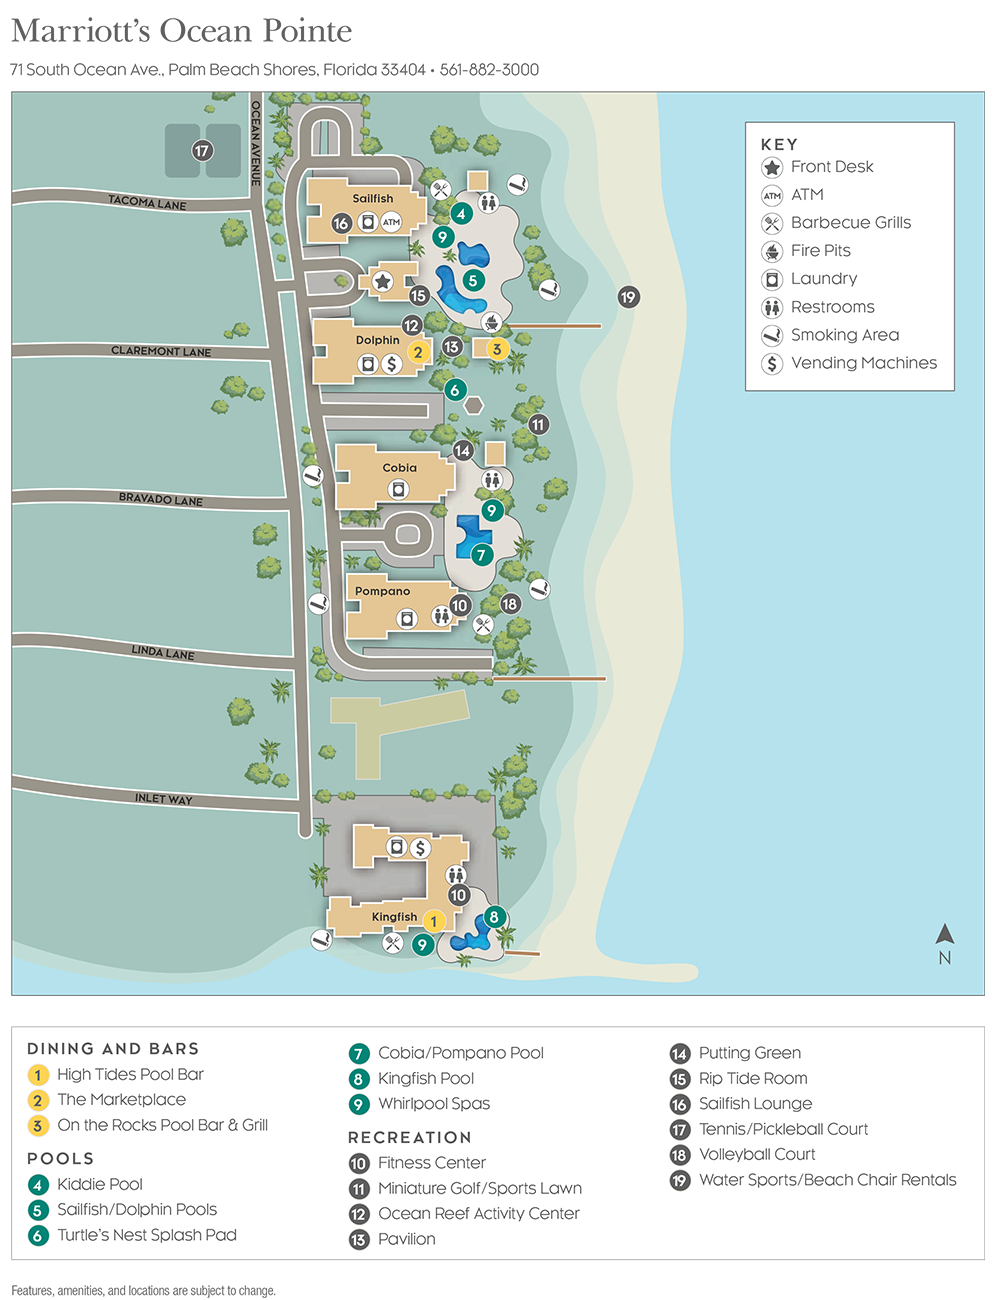 Marriott Ocean Pointe Resort Map